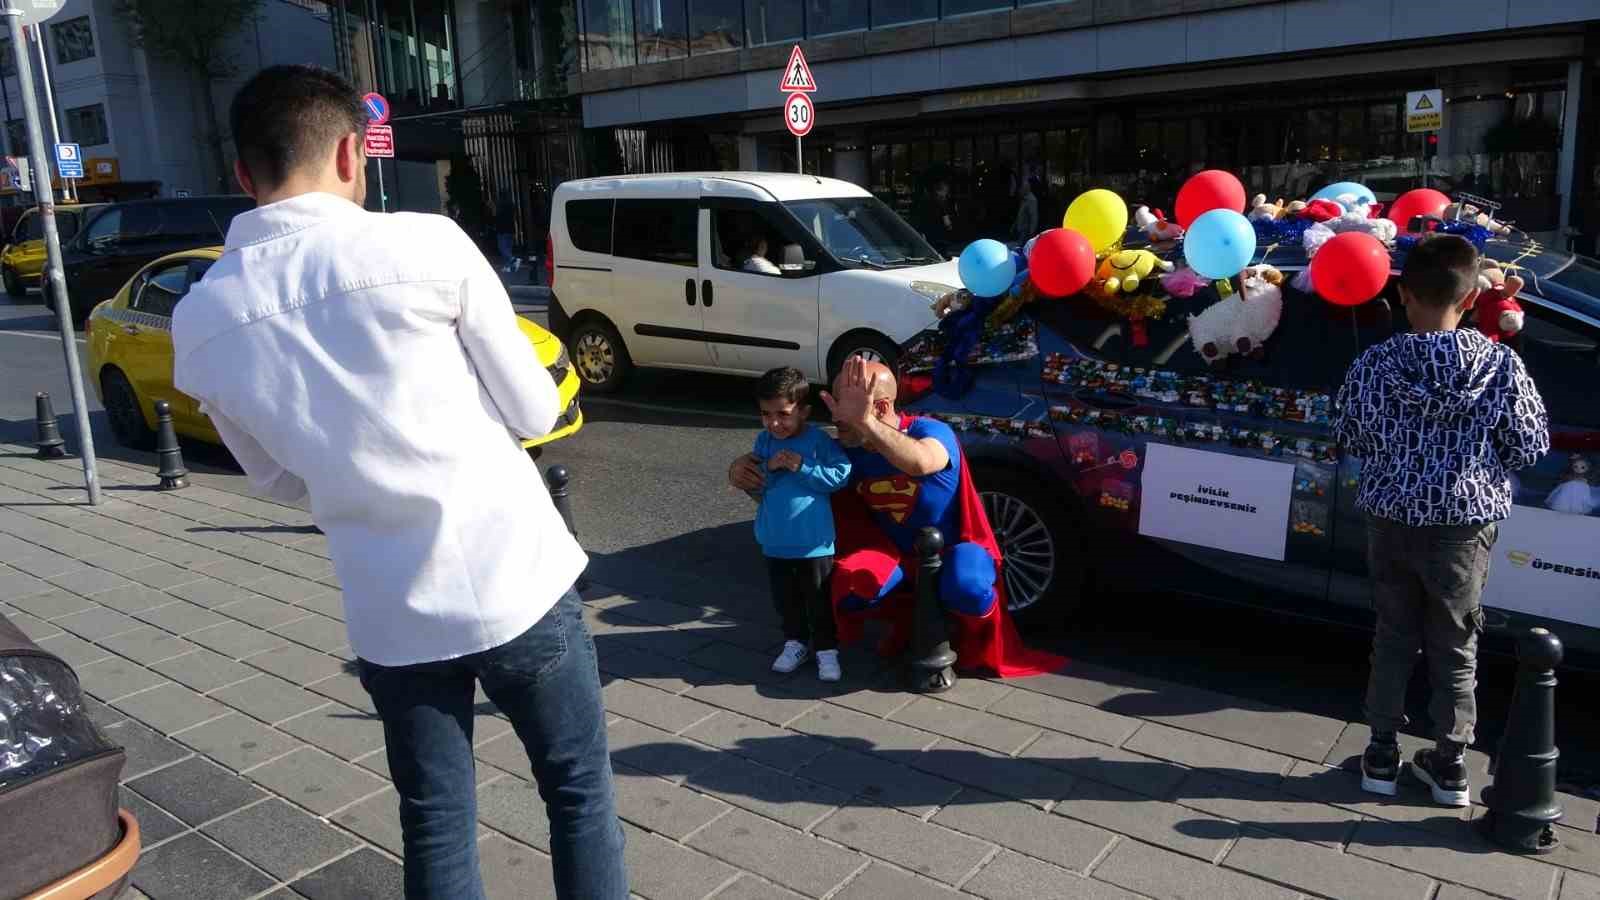 taksimde arabasini sekerlemelerle donatan supermen kostumlu adam cocuklarin ilgi odagi oldu 5 qCJT3AsL